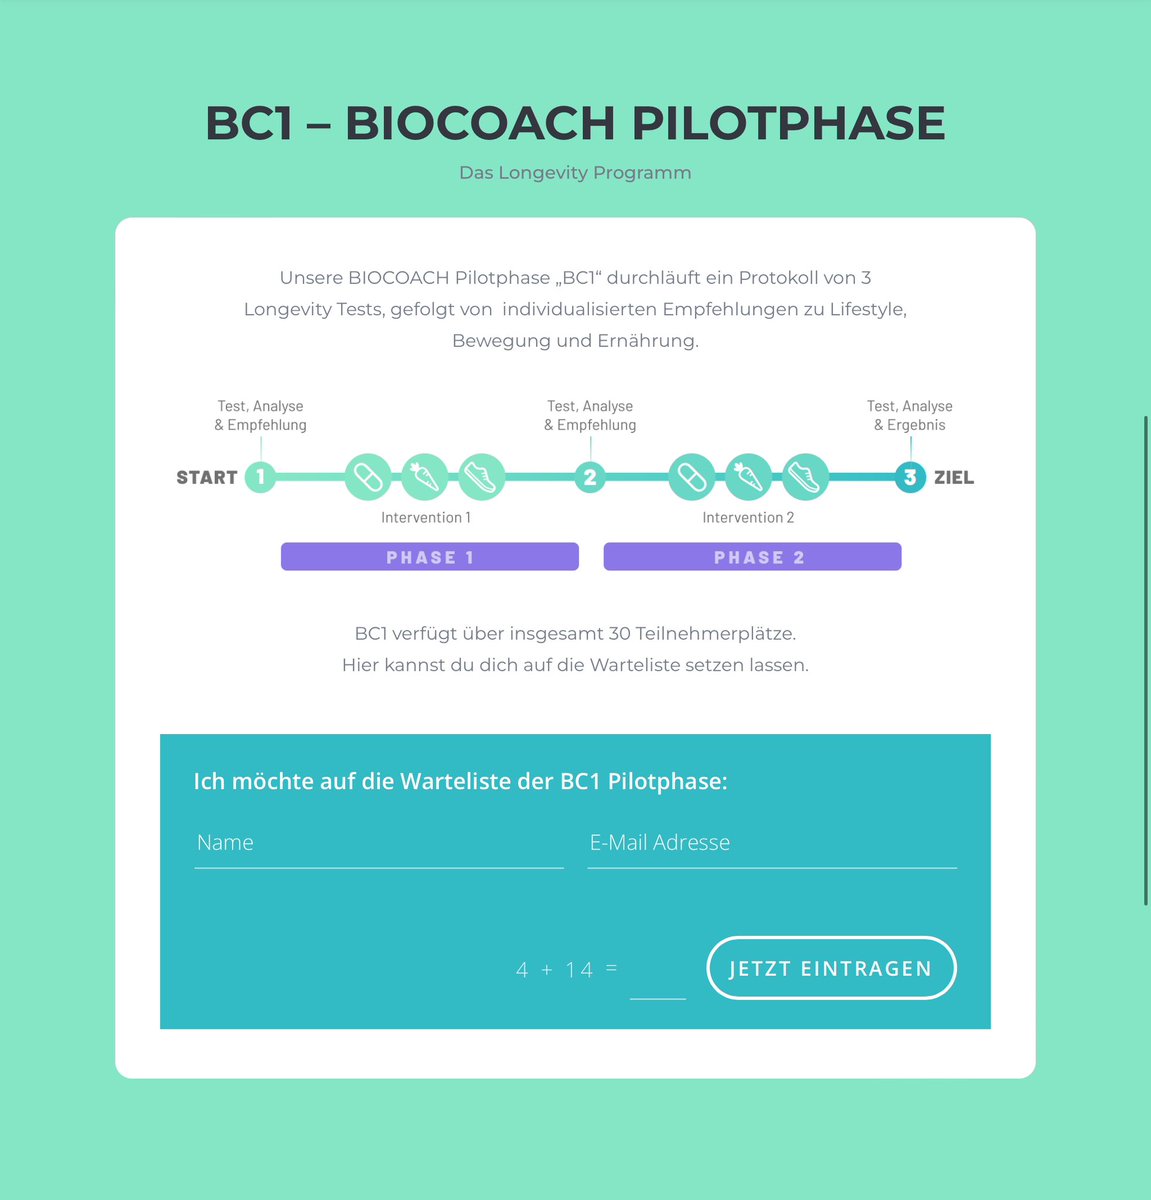 BIOCOACH zielt darauf ab, Menschen aller Altersgruppen ein längeres, gesünderes Leben zu ermöglichen. Die BIOCOACH Pilotphase bietet dir die Möglichkeit, aktiver Teilnehmer einer neuen Ära der Gesundheit zu sein. Hier geht‘s zur Wartelisten-Anmeldung: biocoach.health/bc1-pilotphase/